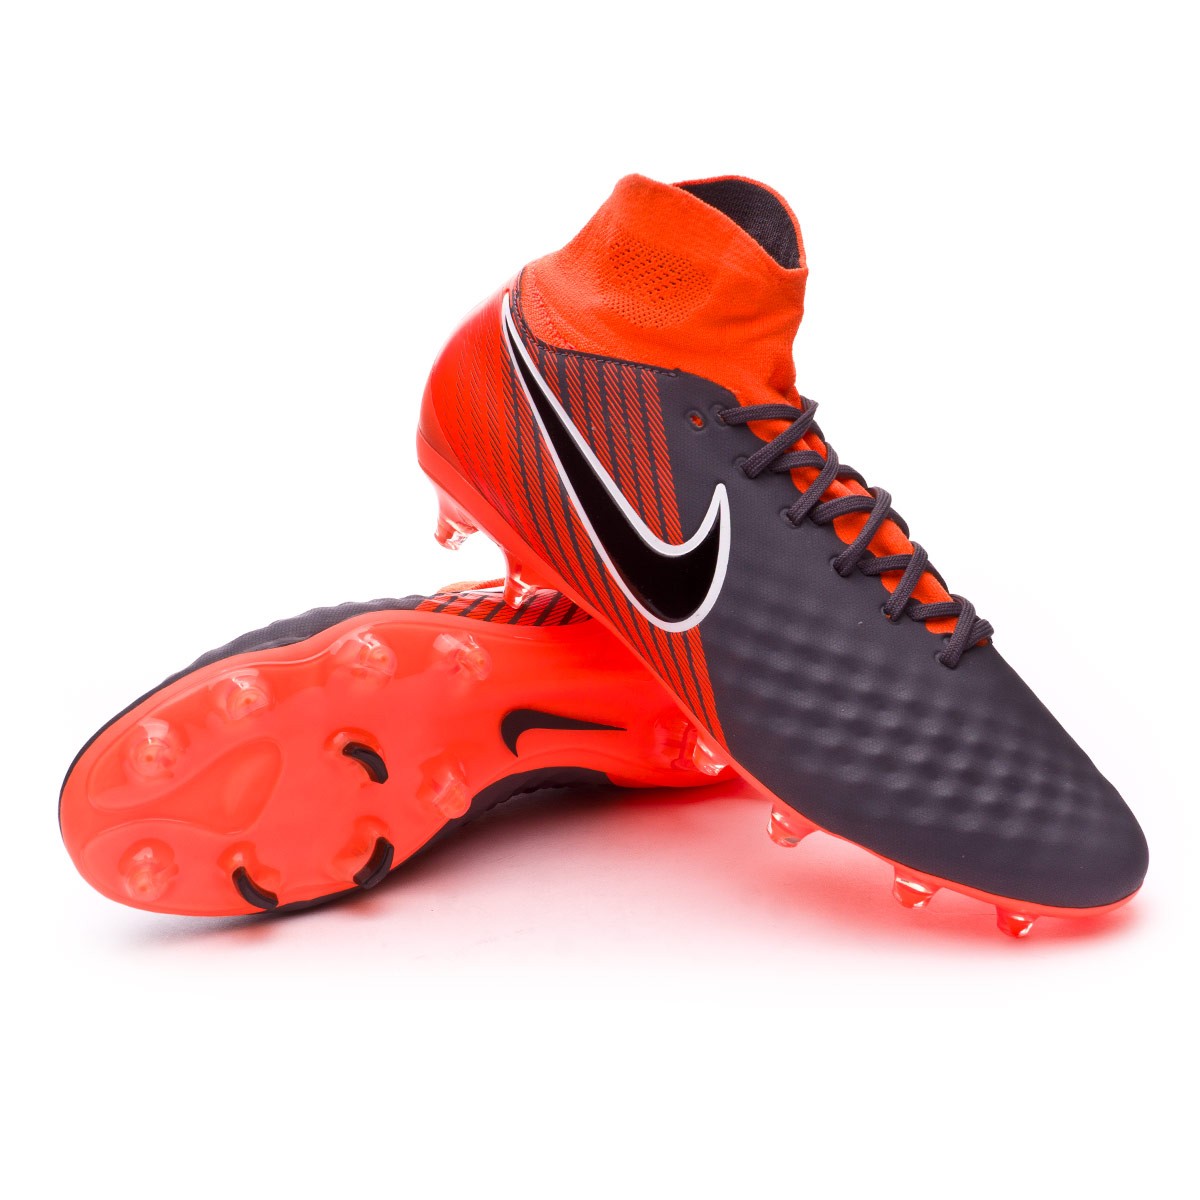 Football Boots Nike Magista Obra II Pro 